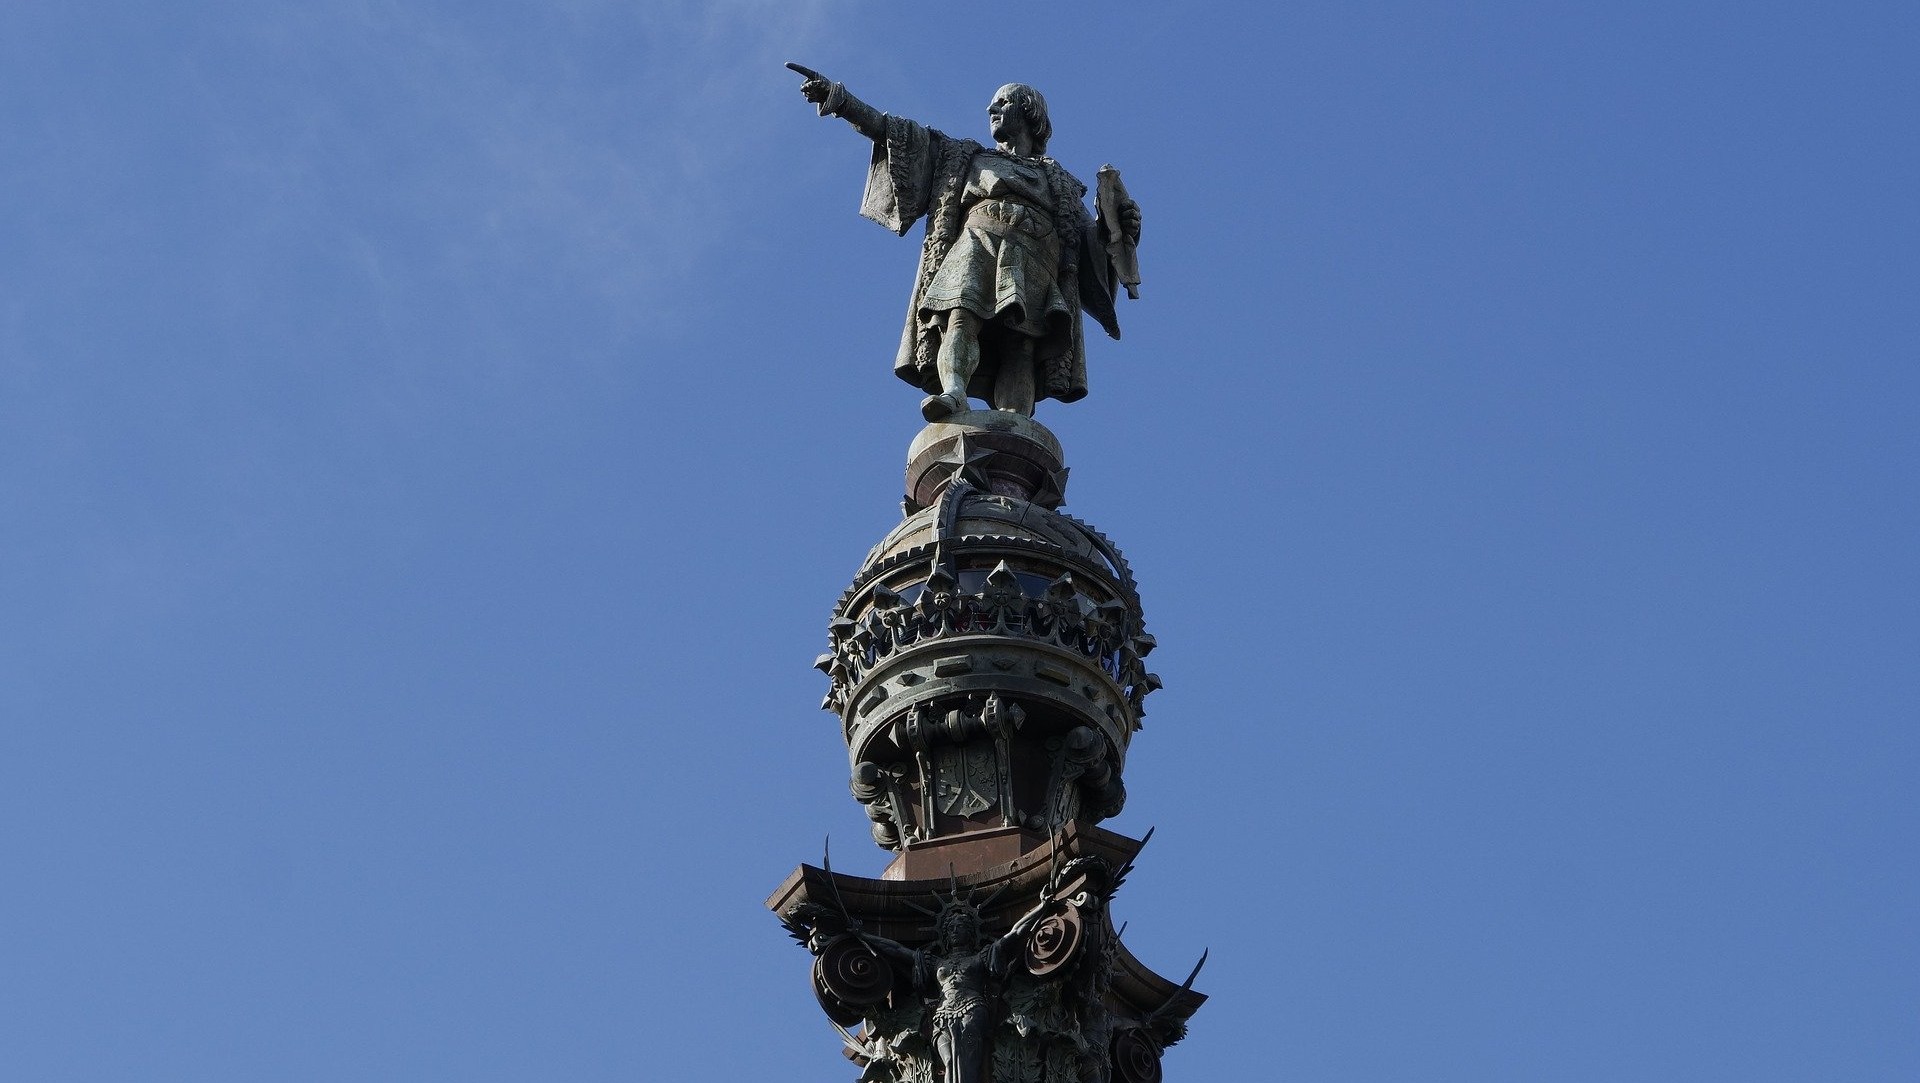 Réplica de Cristóbal Colón es quemada en Barcelona por manifestantes